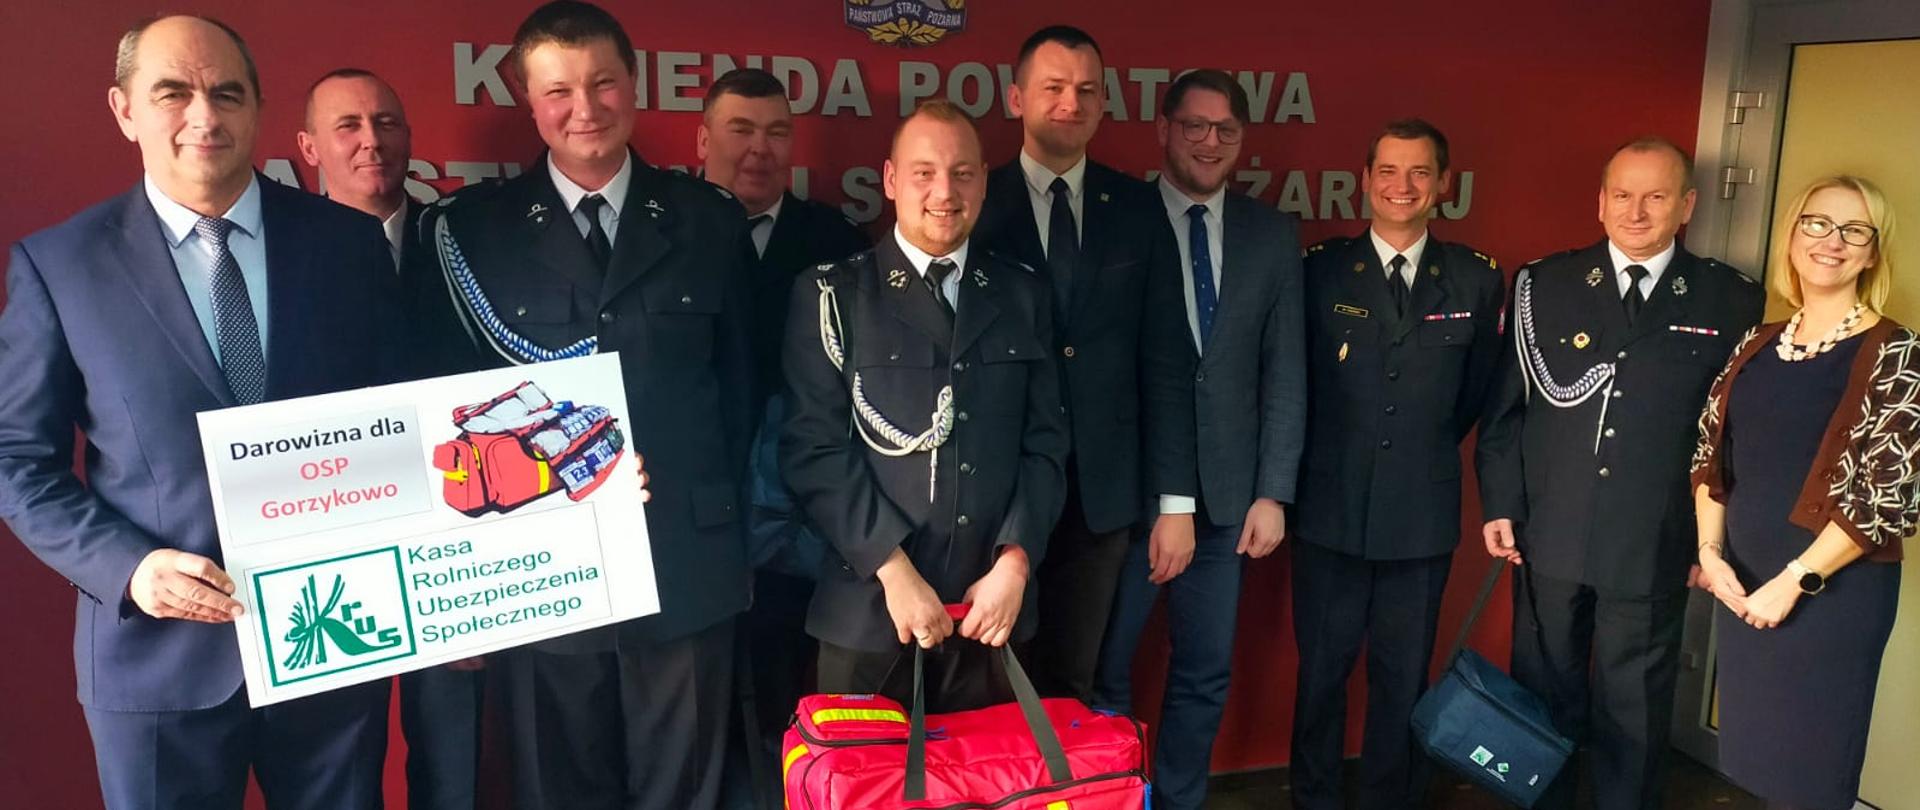 Zdjęcie zbiorowe wszystkich uczestników przekazania torby medycznej dla OSP w Gorzykowie